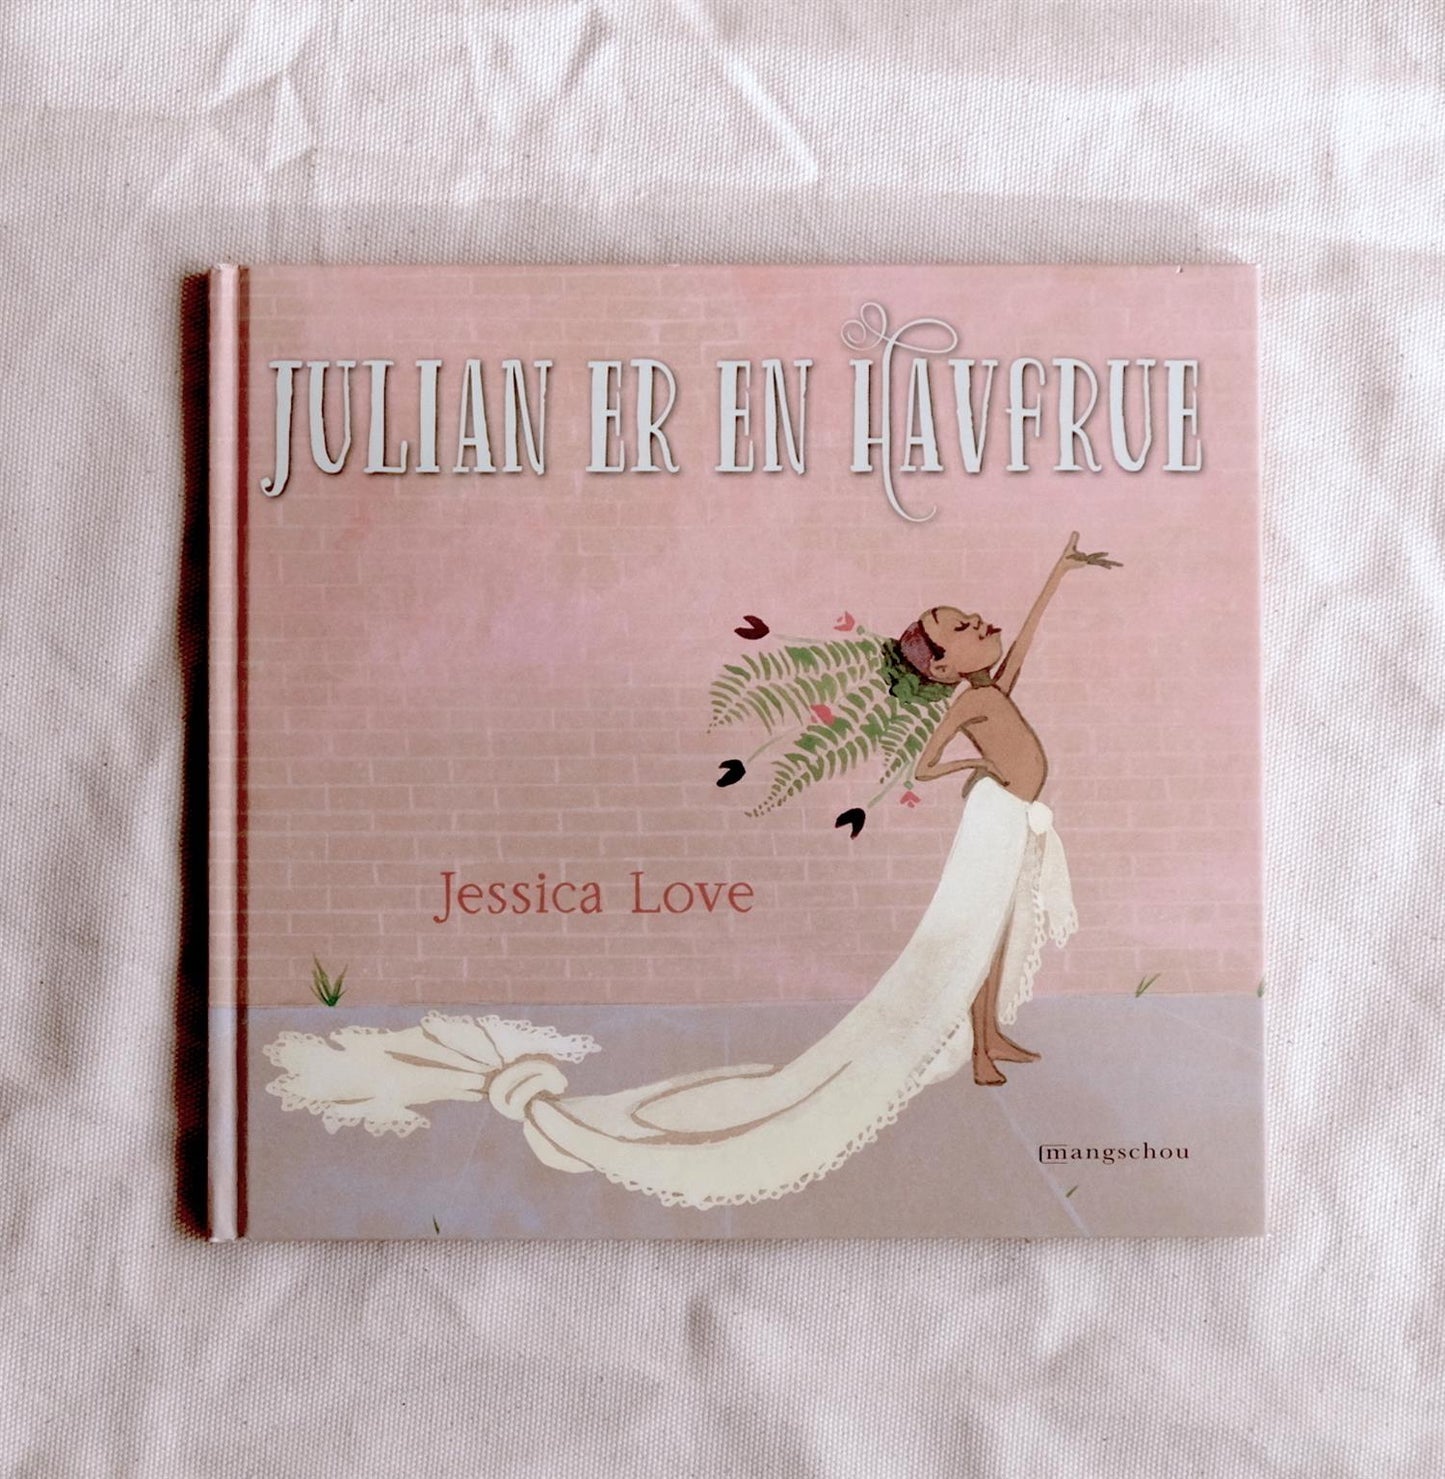 Julian er en havfrue - Jessica Love